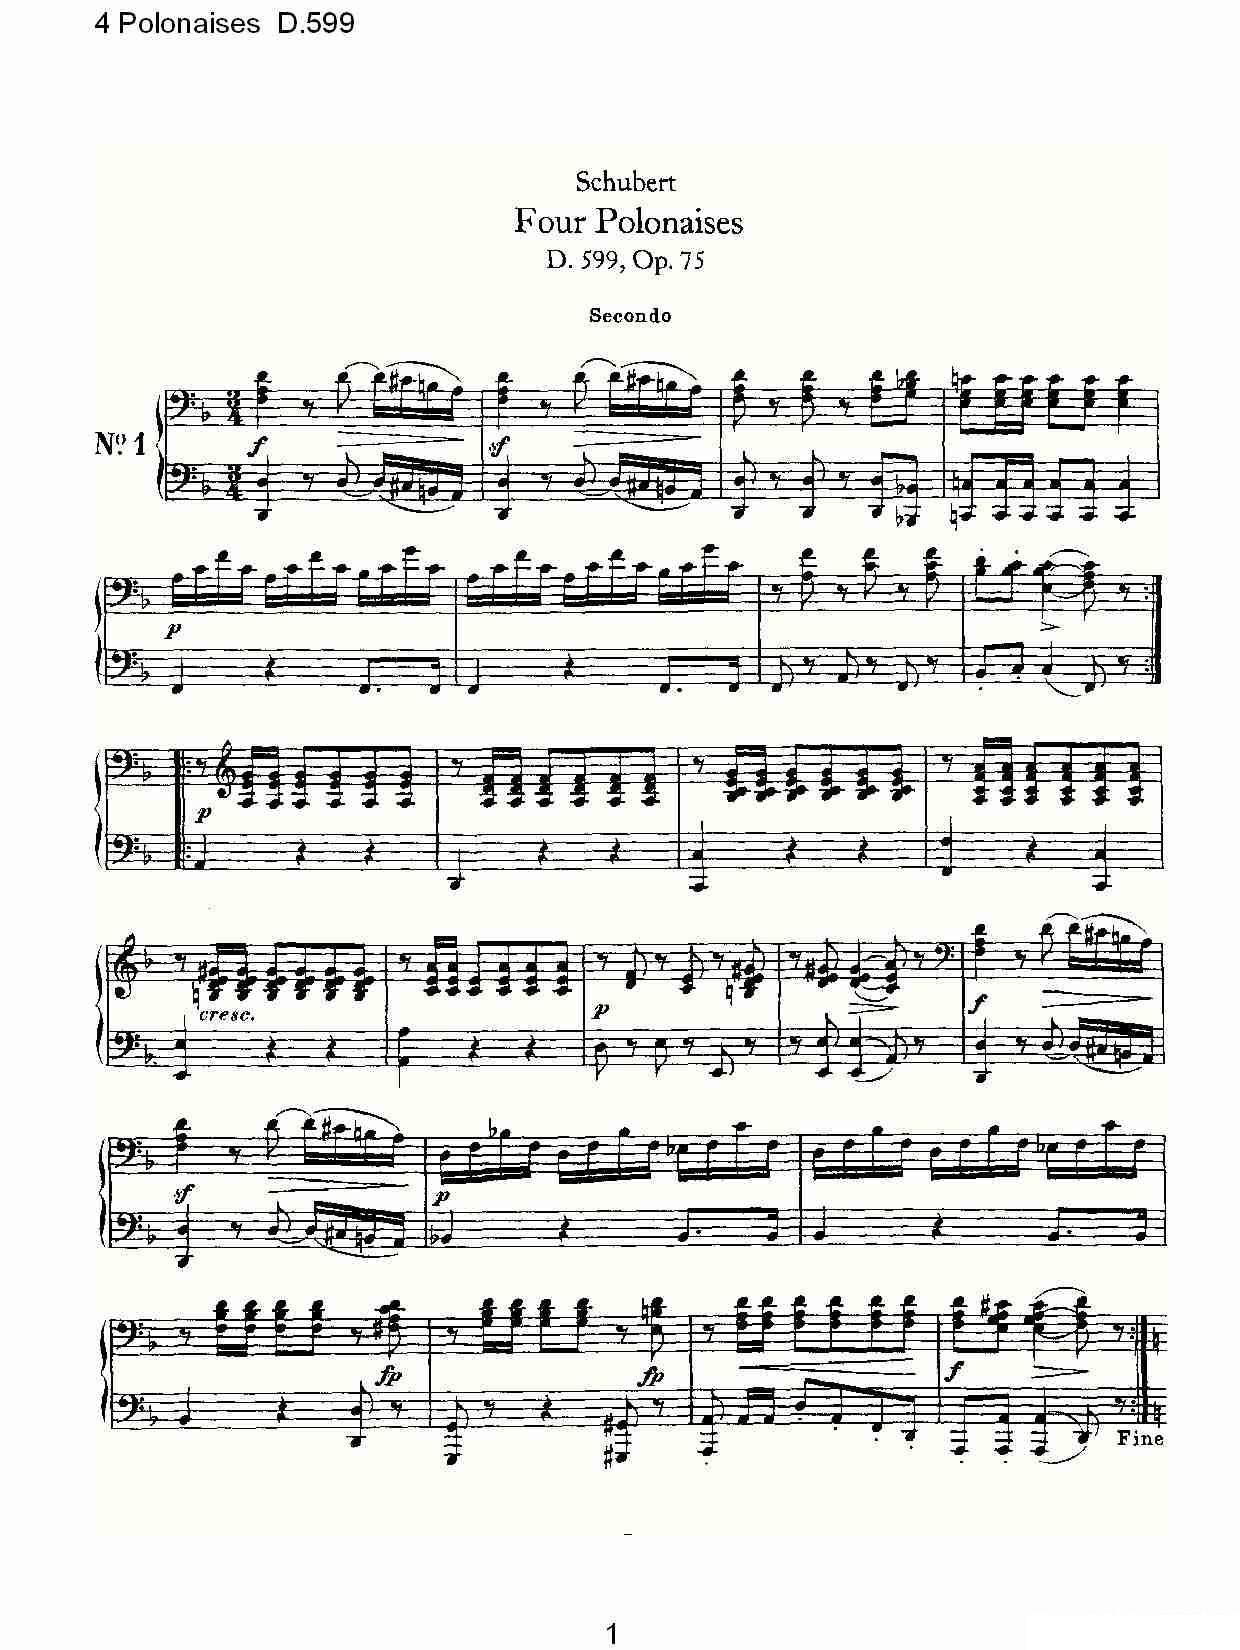 弗朗兹·舒柏特《4 Polonaises D.599》钢琴谱（第1页）